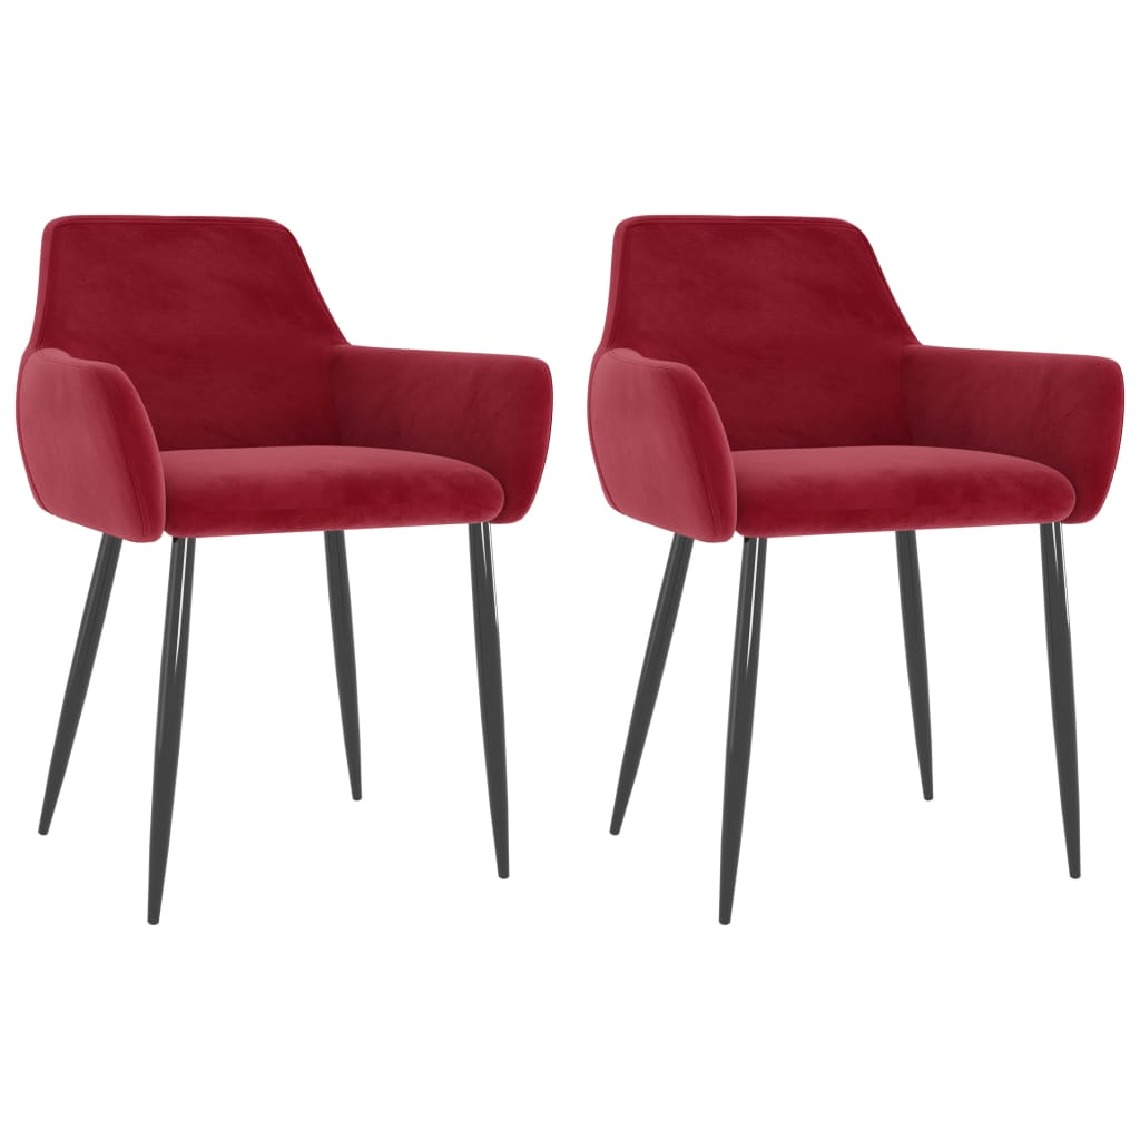 Chunhelife - Chunhelife Chaises de salle à manger 2 pcs Rouge bordeaux Velours - Chaises